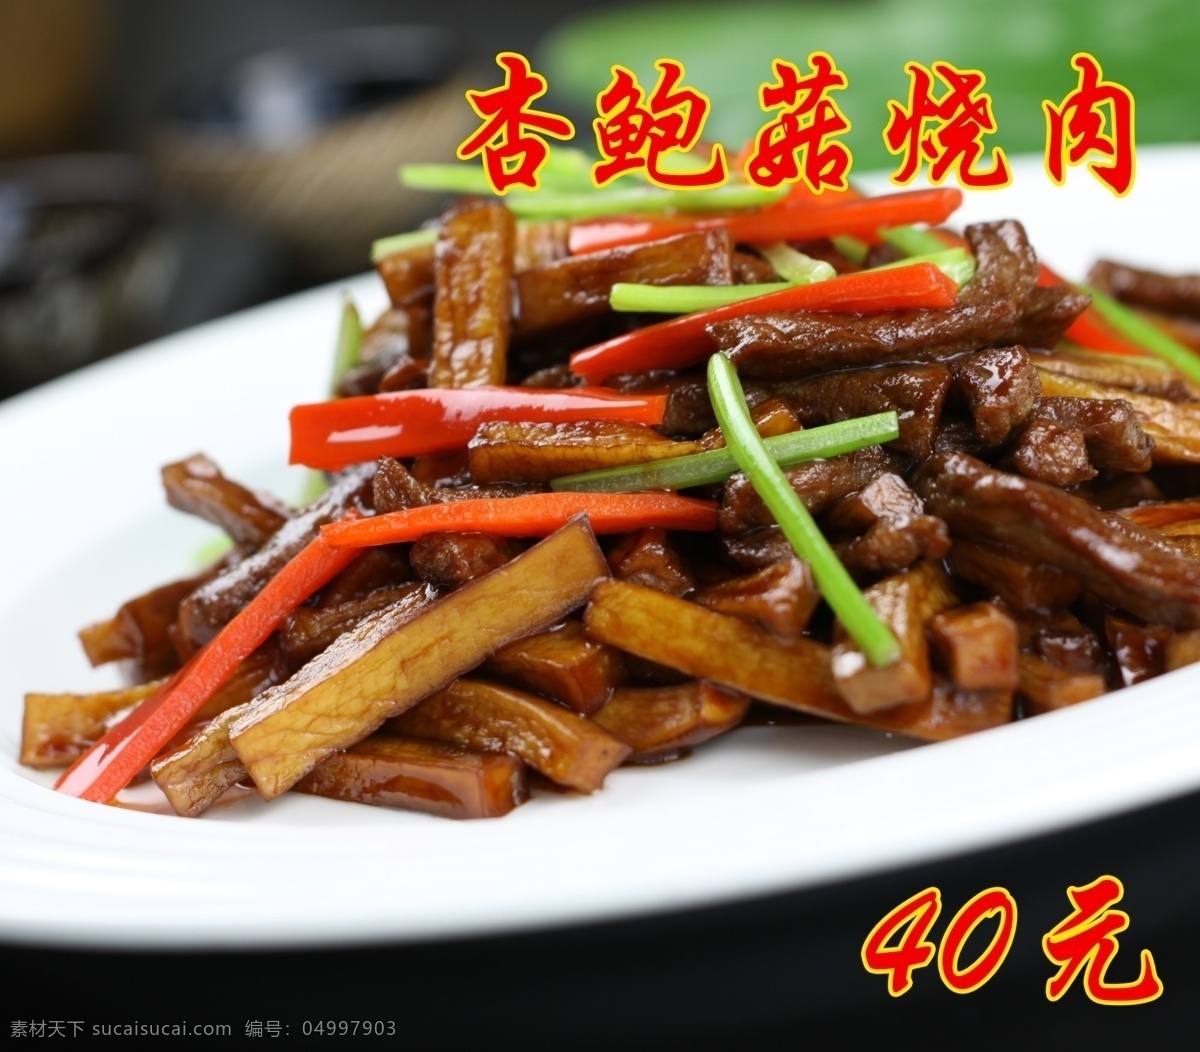 杏鲍菇炒肉 炒肉 炒蘑菇 美食 美味 杏鲍菇 小龙 菜单菜谱